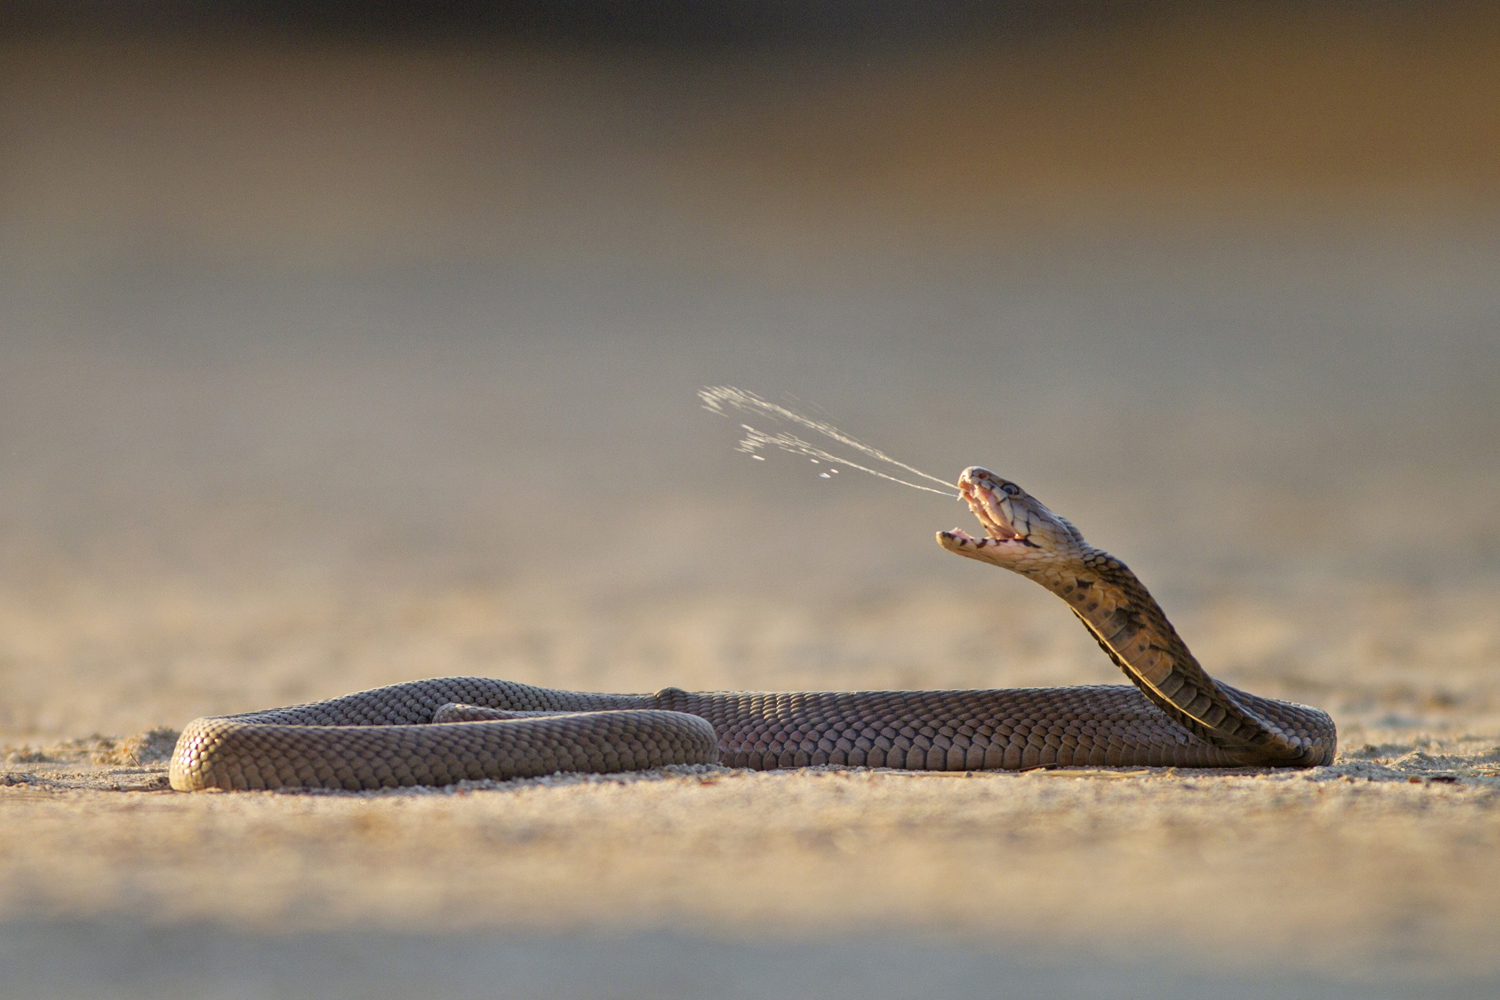 A Mozambique spitting cobra. Photos: Kadoorie Farm & Botanic Garden; Corbis; AFP